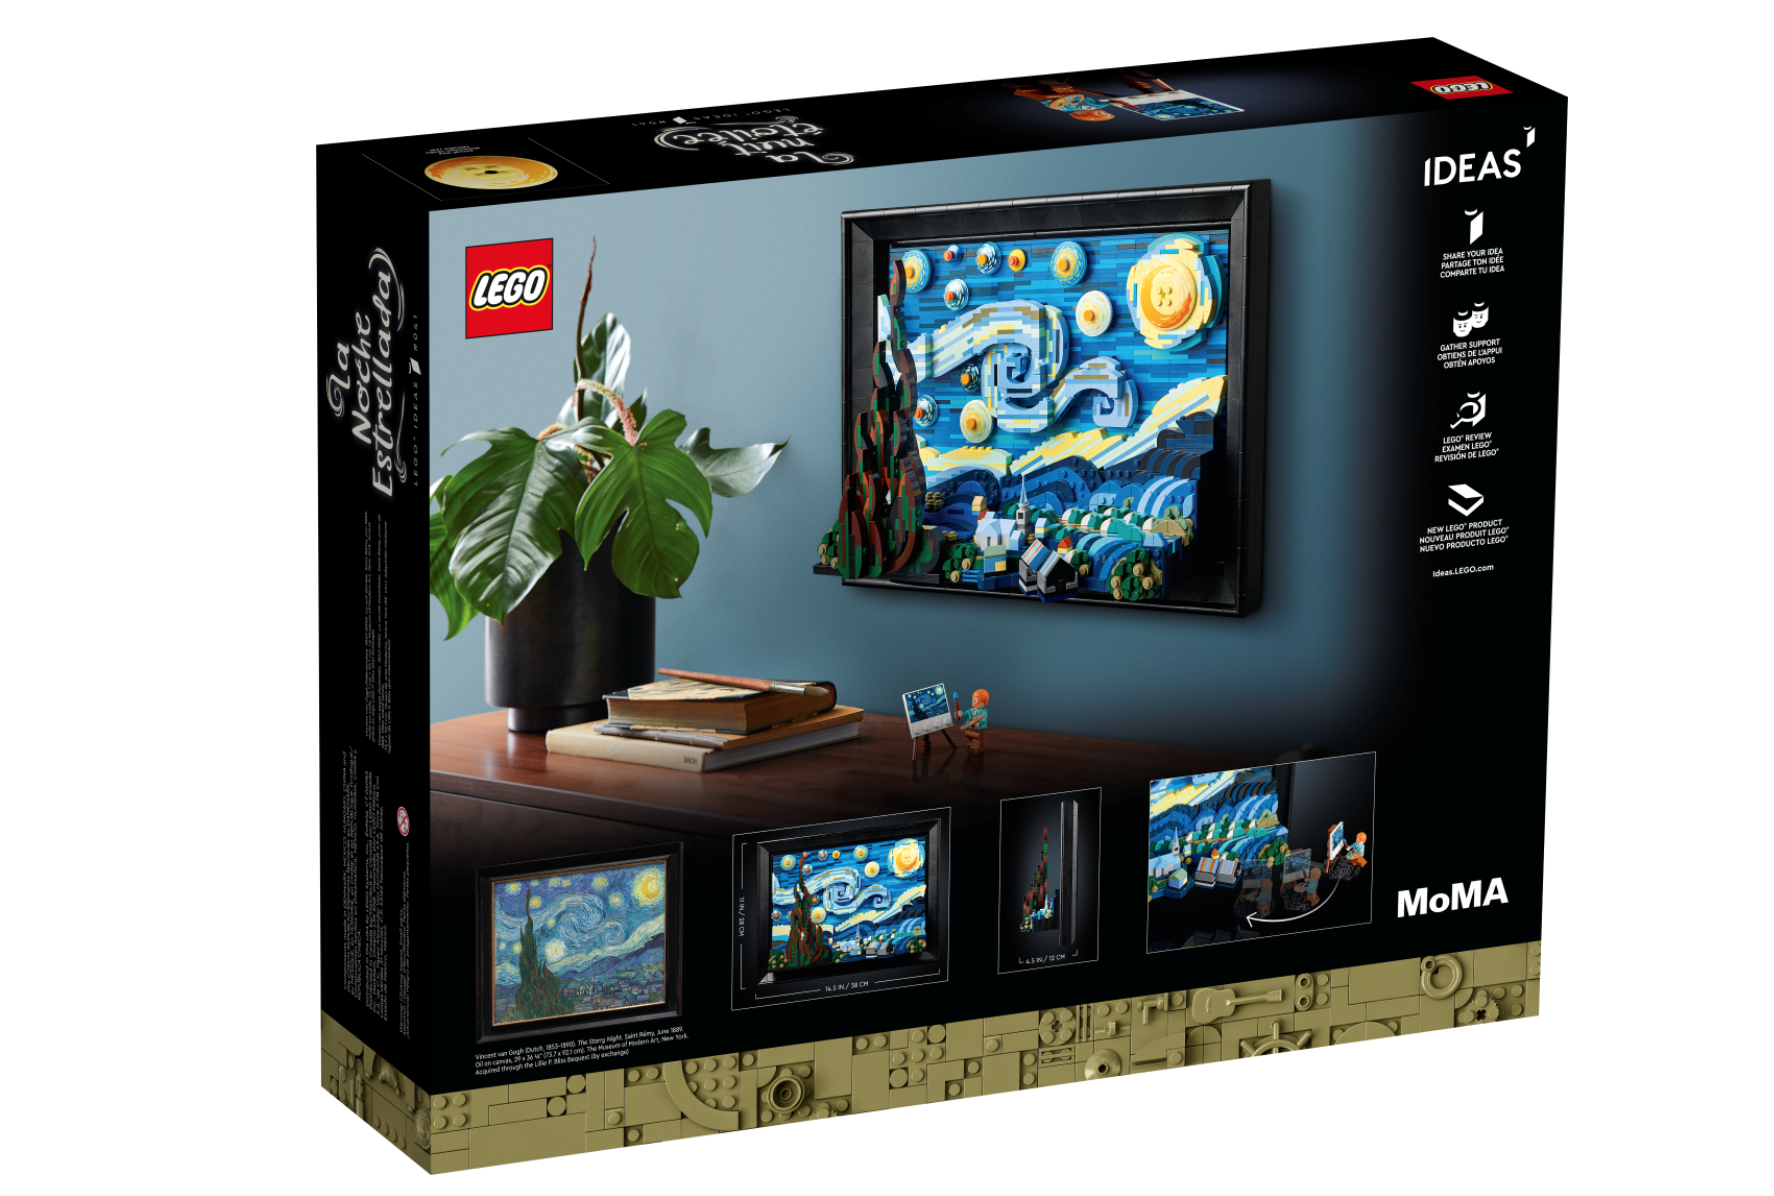 Lego noche estrellada Van Gogh